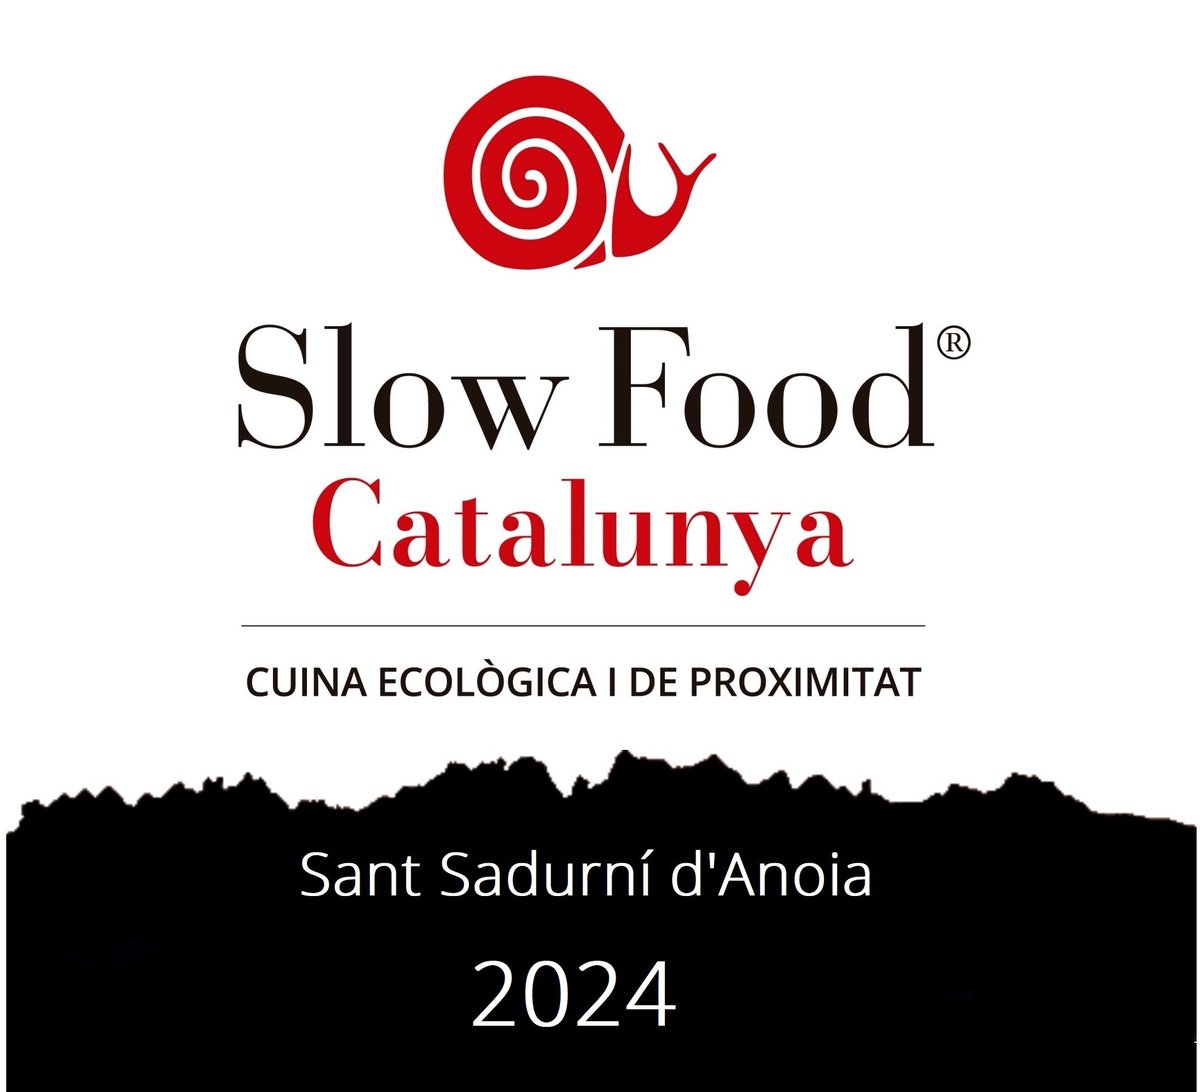 L'associació @cuinerskm0 #cuiners #SlowFood #Km0 avui a @santsadurni_cat @TSantSadurni

On es fara l'entrega distintius 2024 de #Catalunya #Restauracio cc
@SomGastronomia @SlowFoodCat